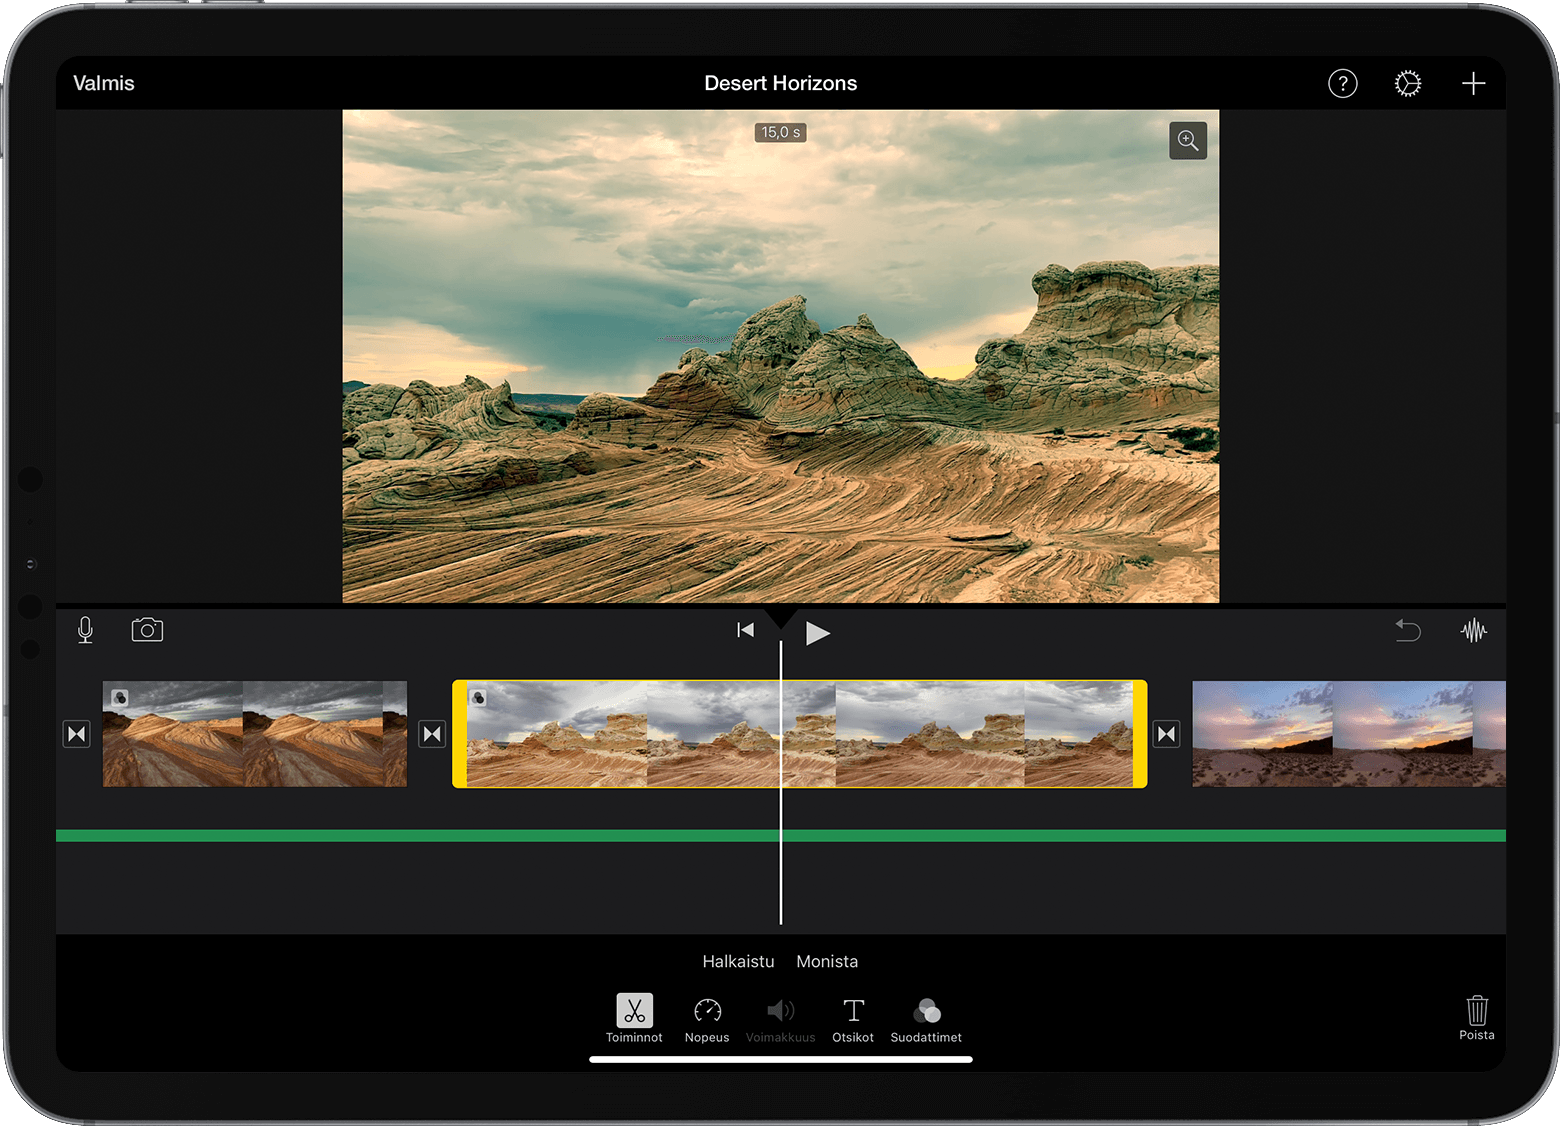 iPadin iMovie-projekti avattuna, videoklippi valittuna aikajanalla